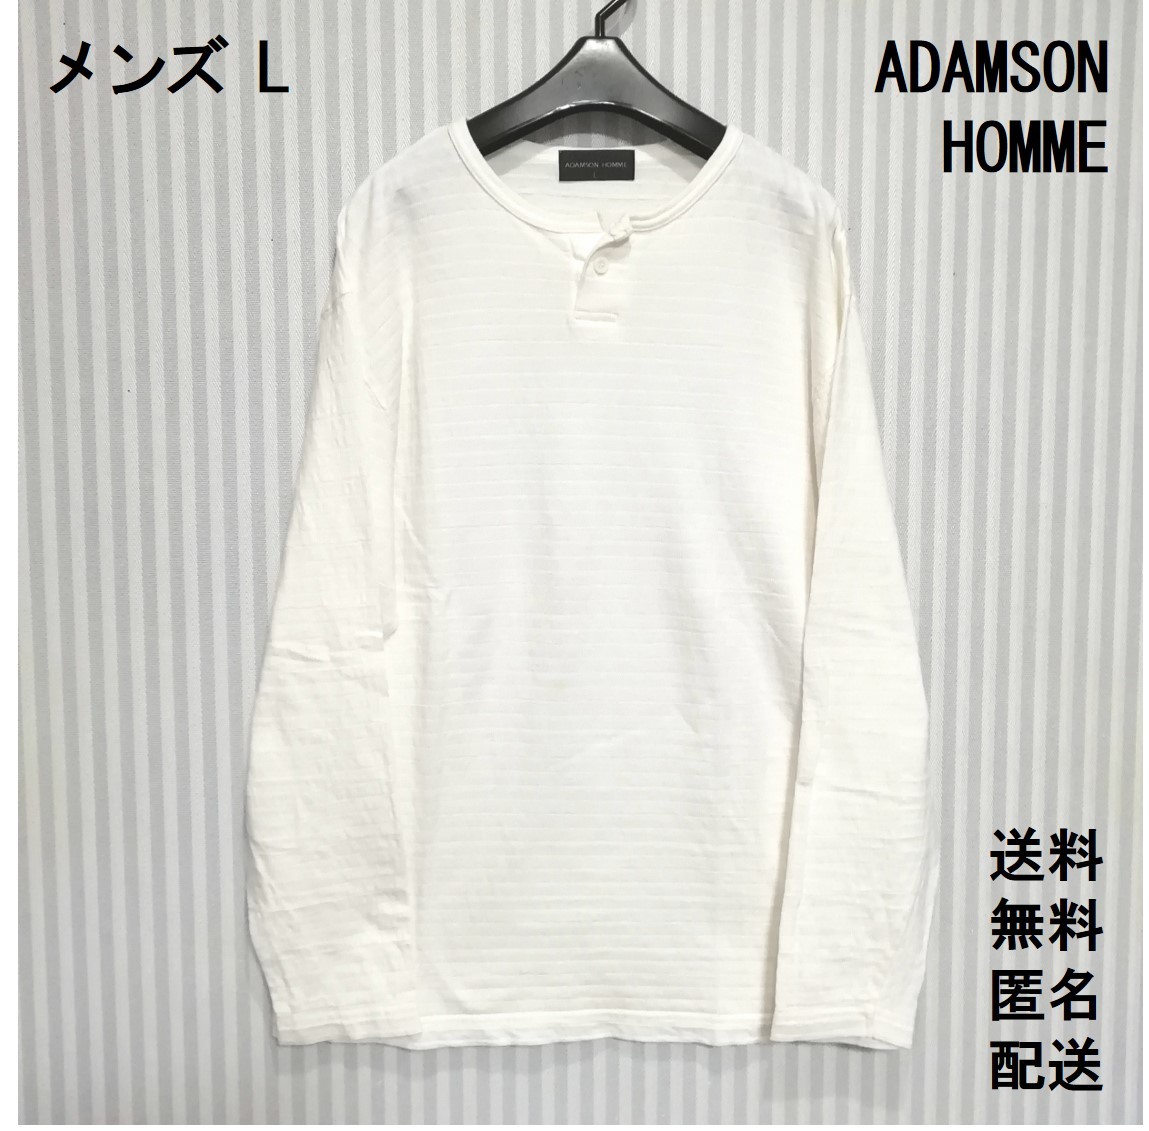 純正スタンドセット ADAMSON HOMME 半袖 ジップシャツ ジッパーシャツ 白 日本限定企画-ファッション,メンズファッション -  ekumudini.com